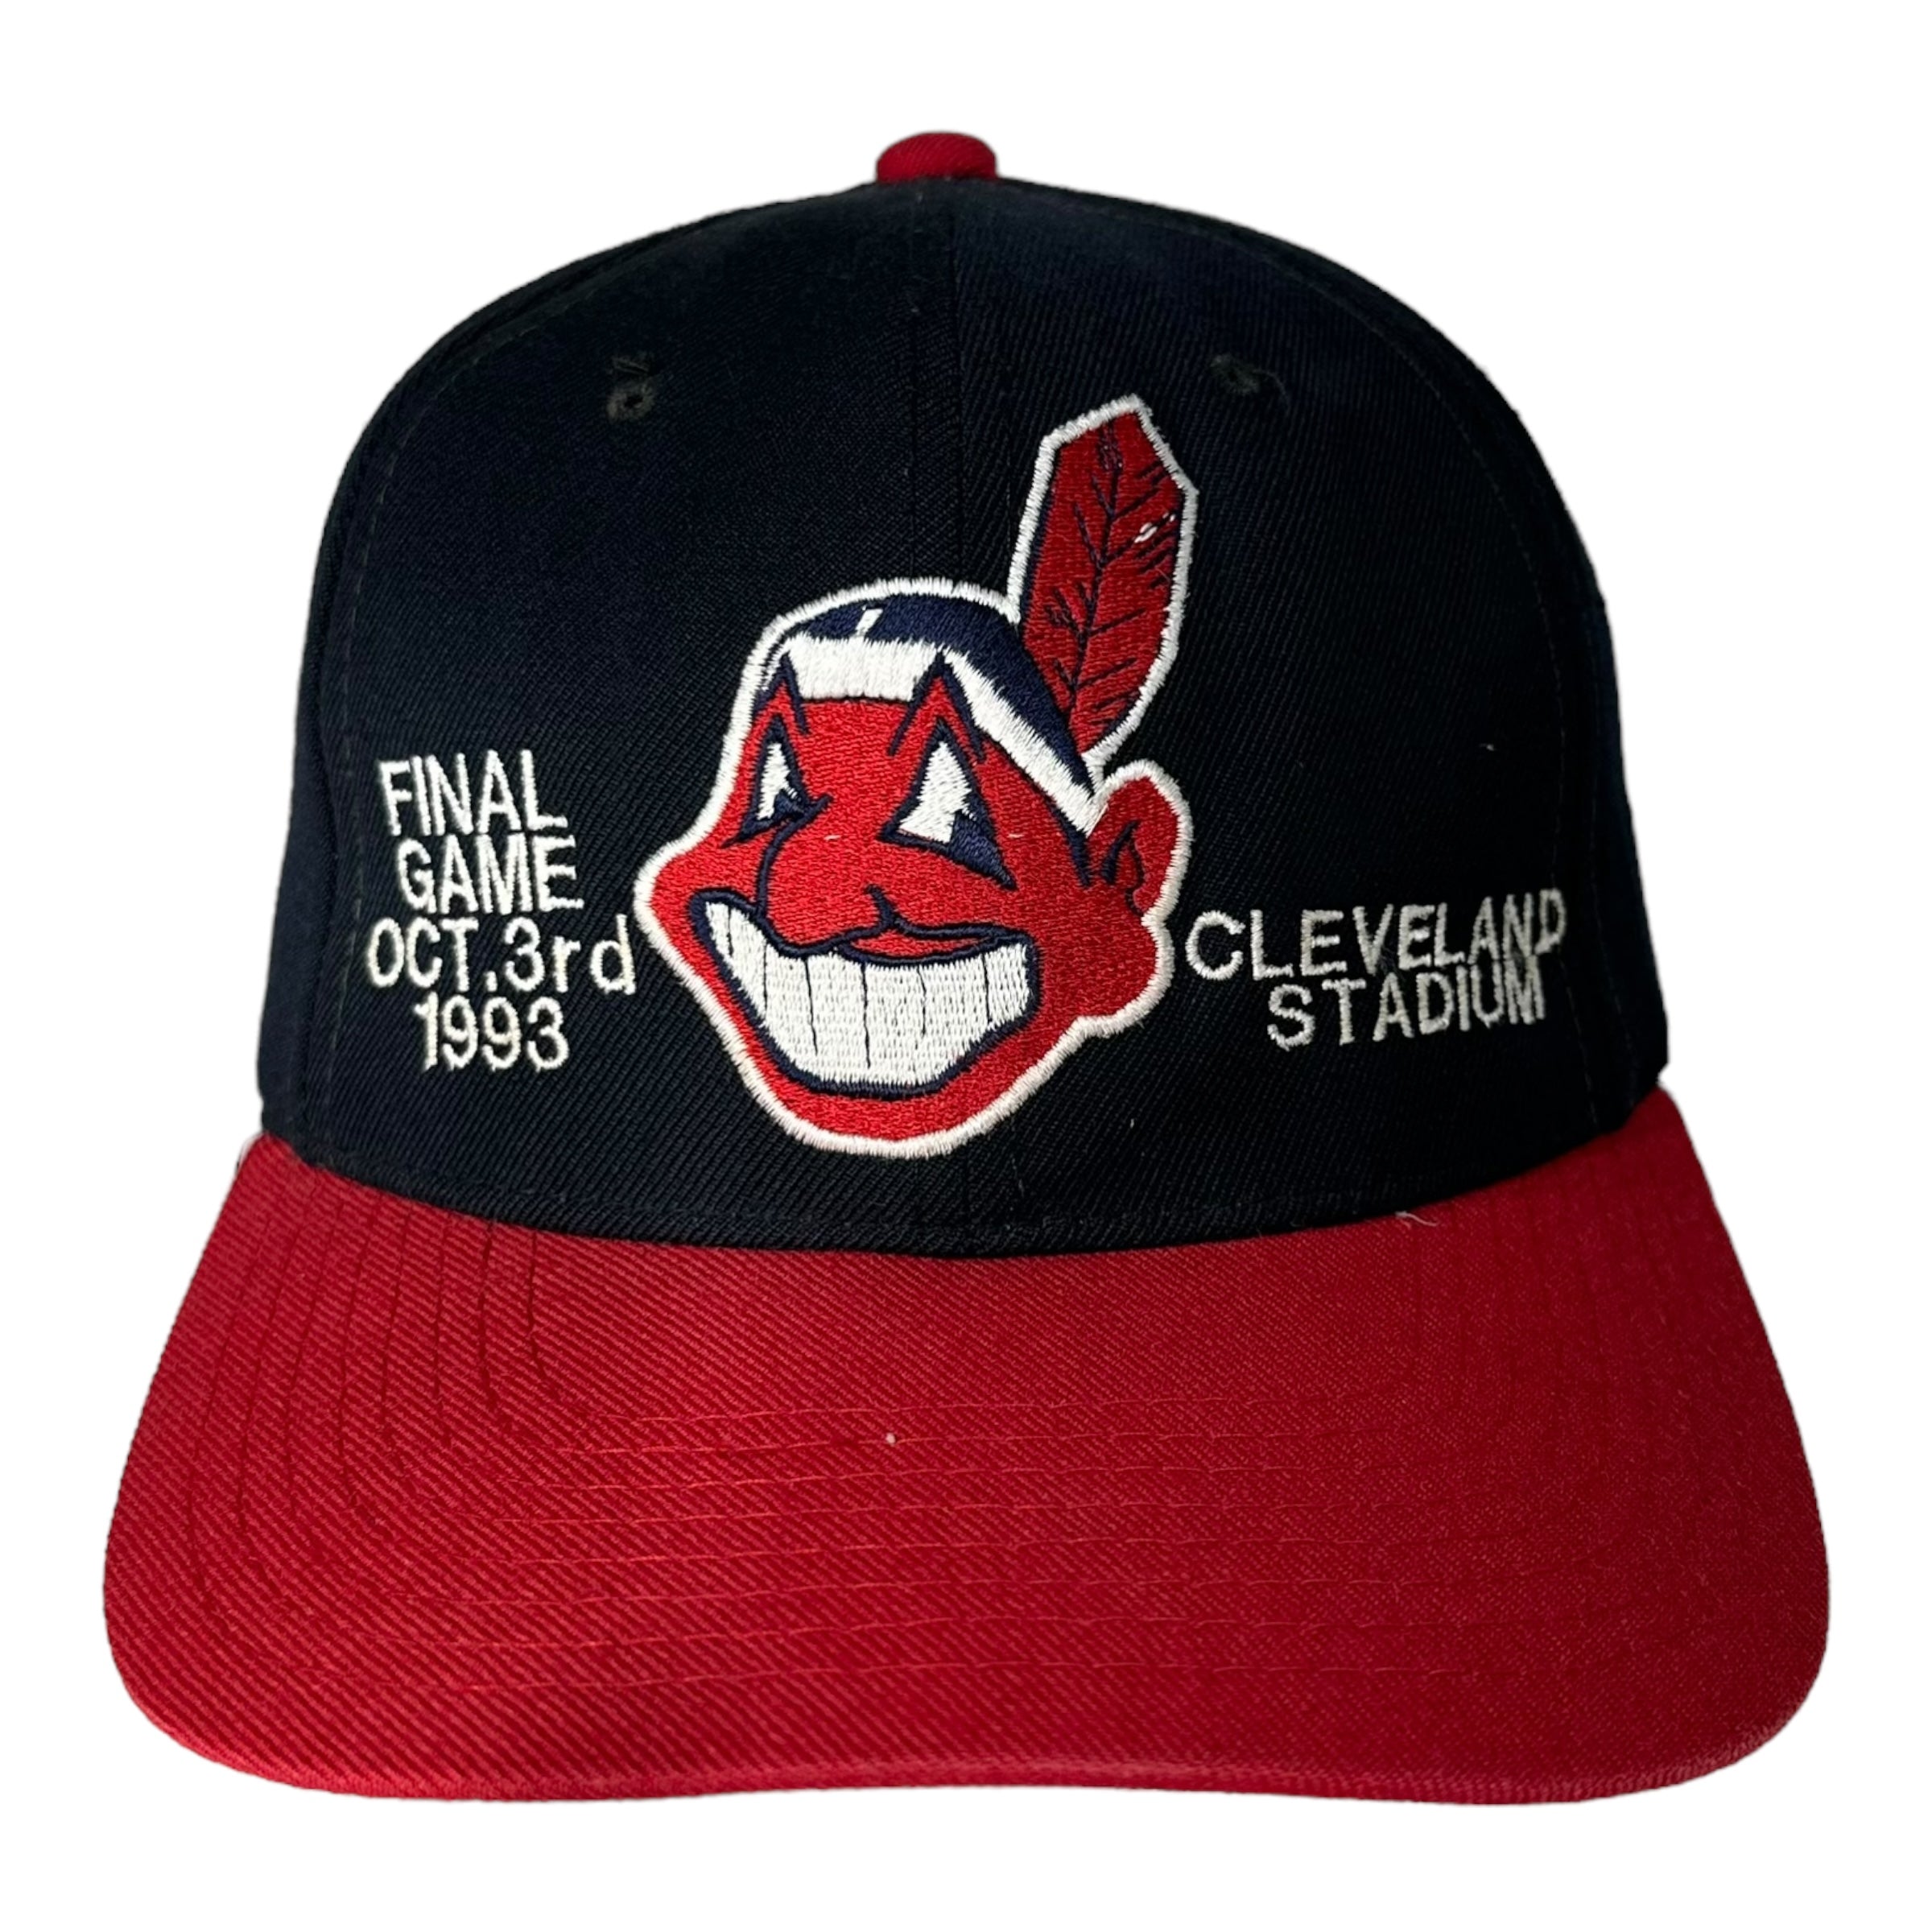 Vintage Cleveland Indians Final Game Snapback 1993